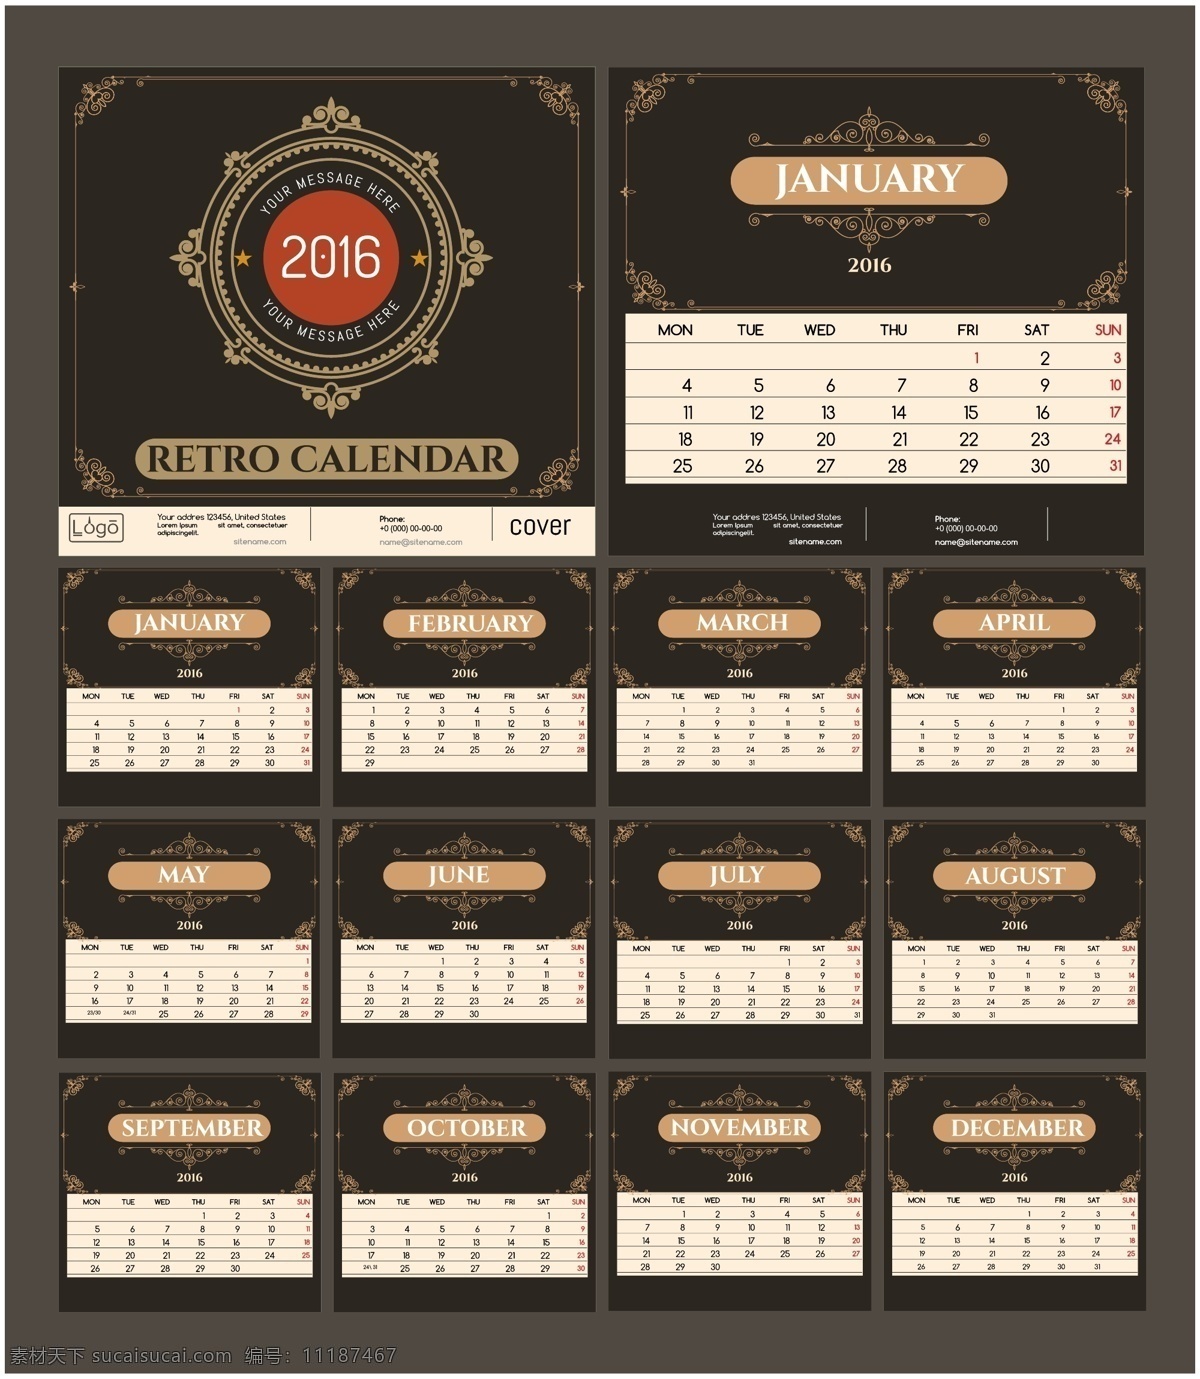 企业日历设计 calendar 2016 日历 创意日历 彩色日历 企业vi 日历台历 矢量素材 黑色